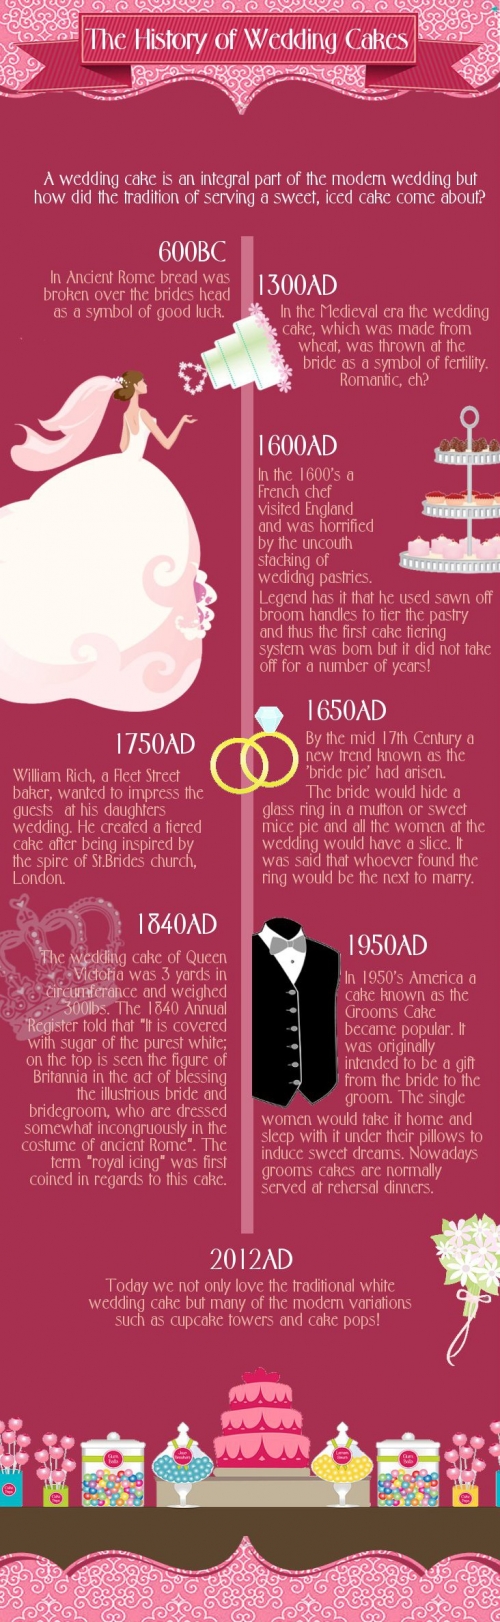 wedding_cakes_infographic_500